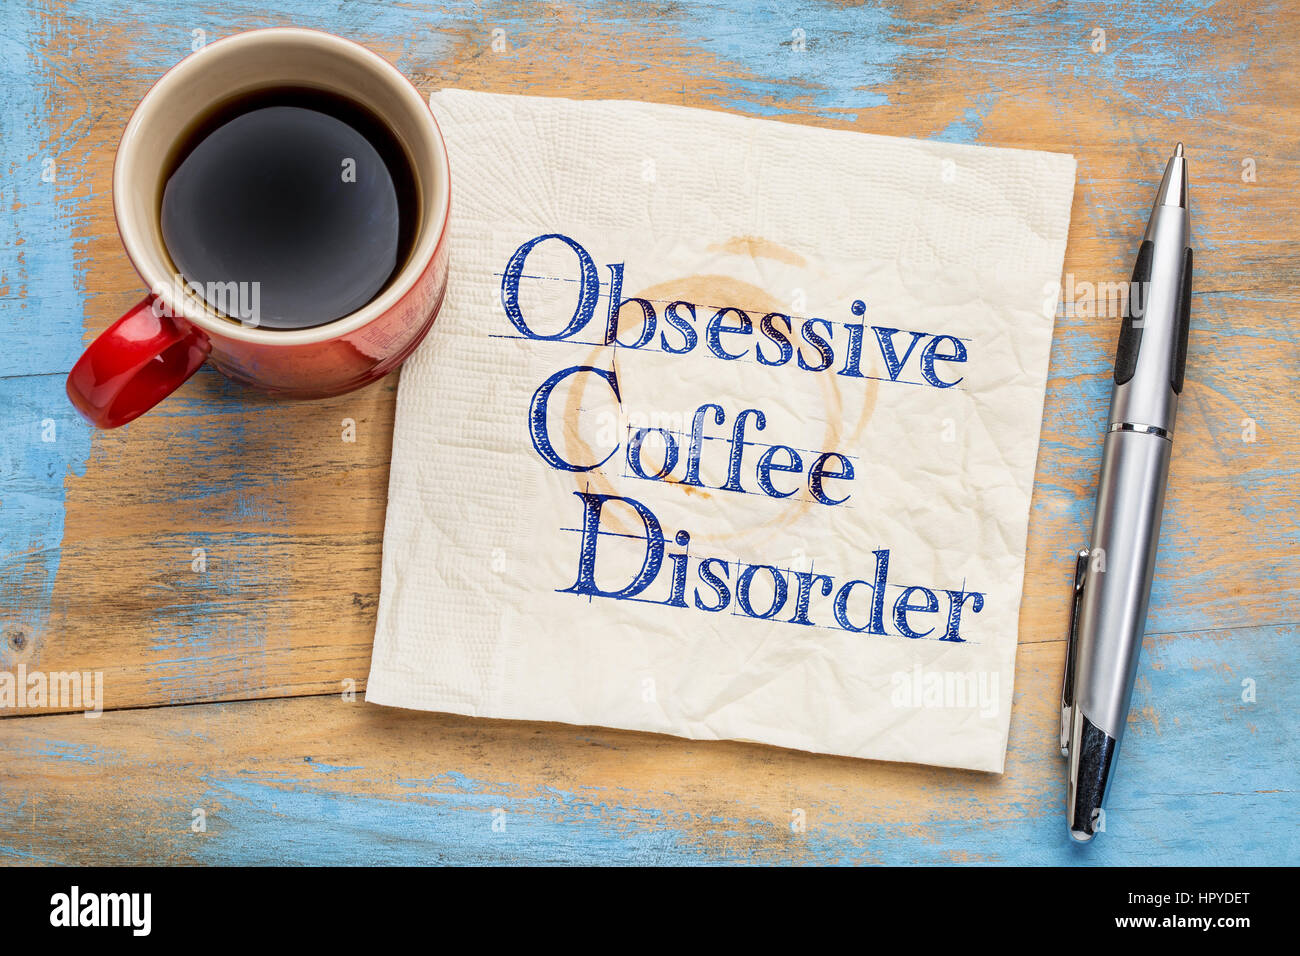 Ossessivo disturbo di caffè (OCD) - scrittura su un tovagliolo con una tazza di caffè Foto Stock